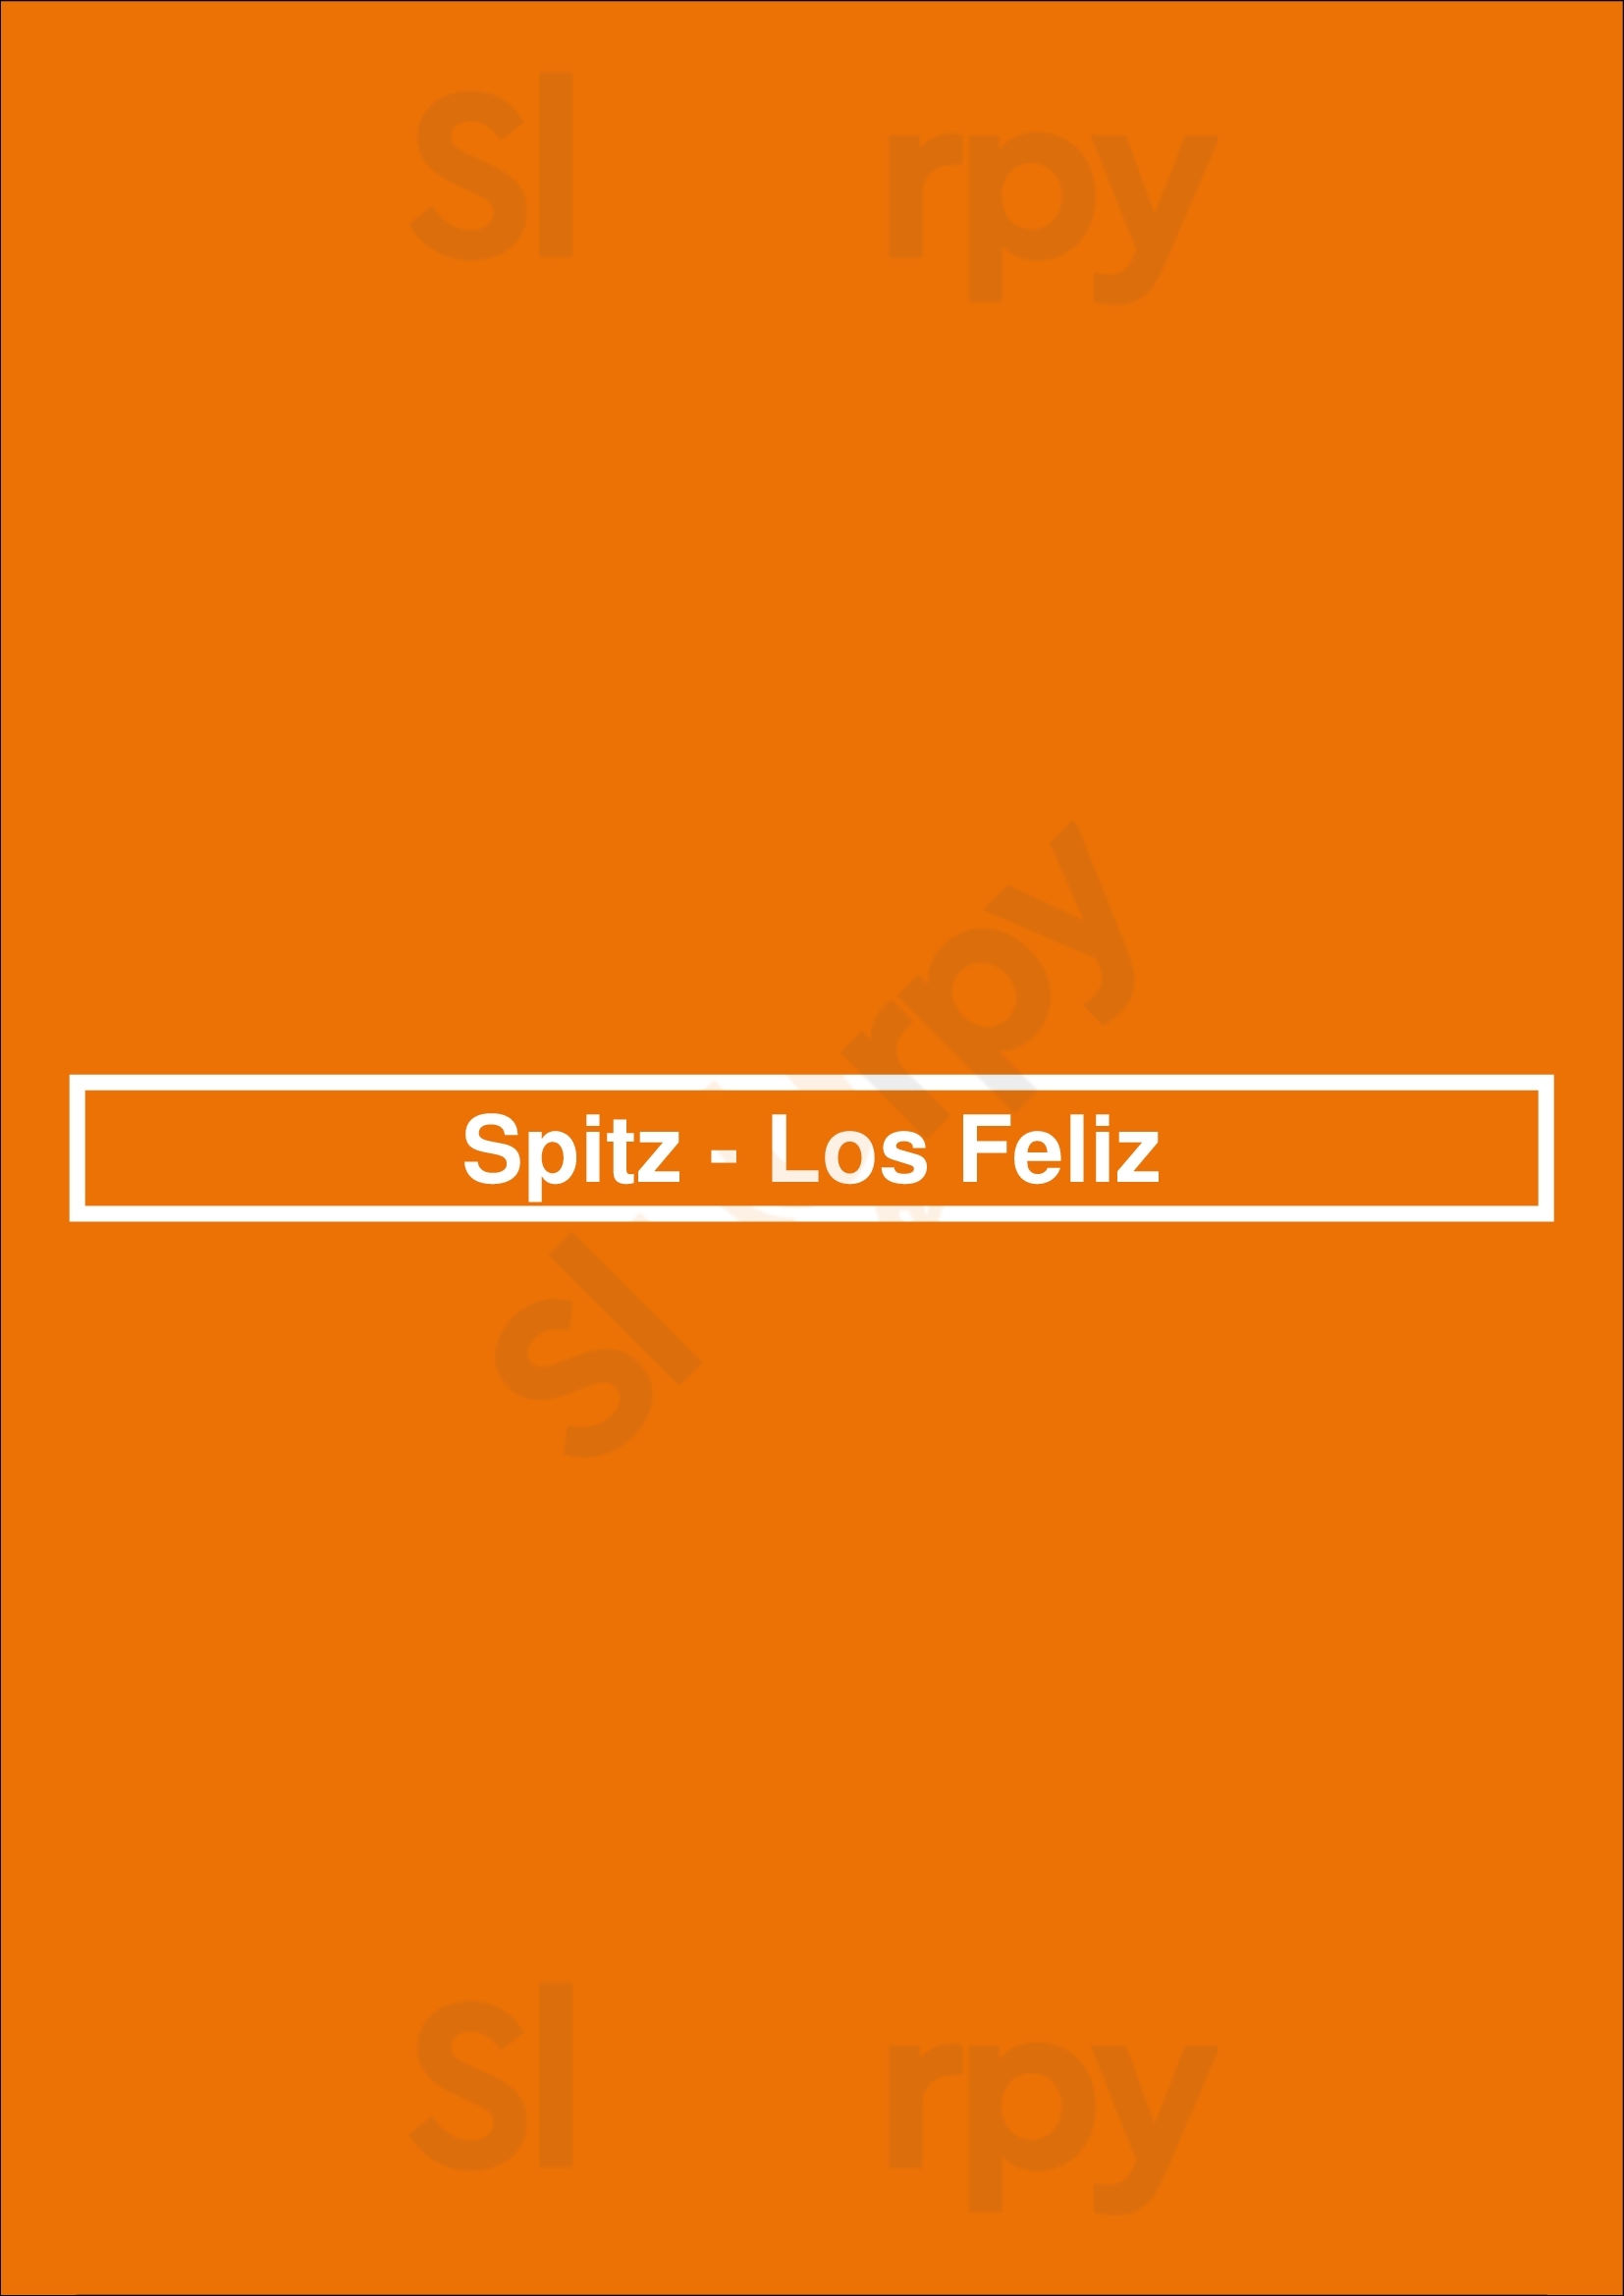 Spitz - Los Feliz Los Angeles Menu - 1